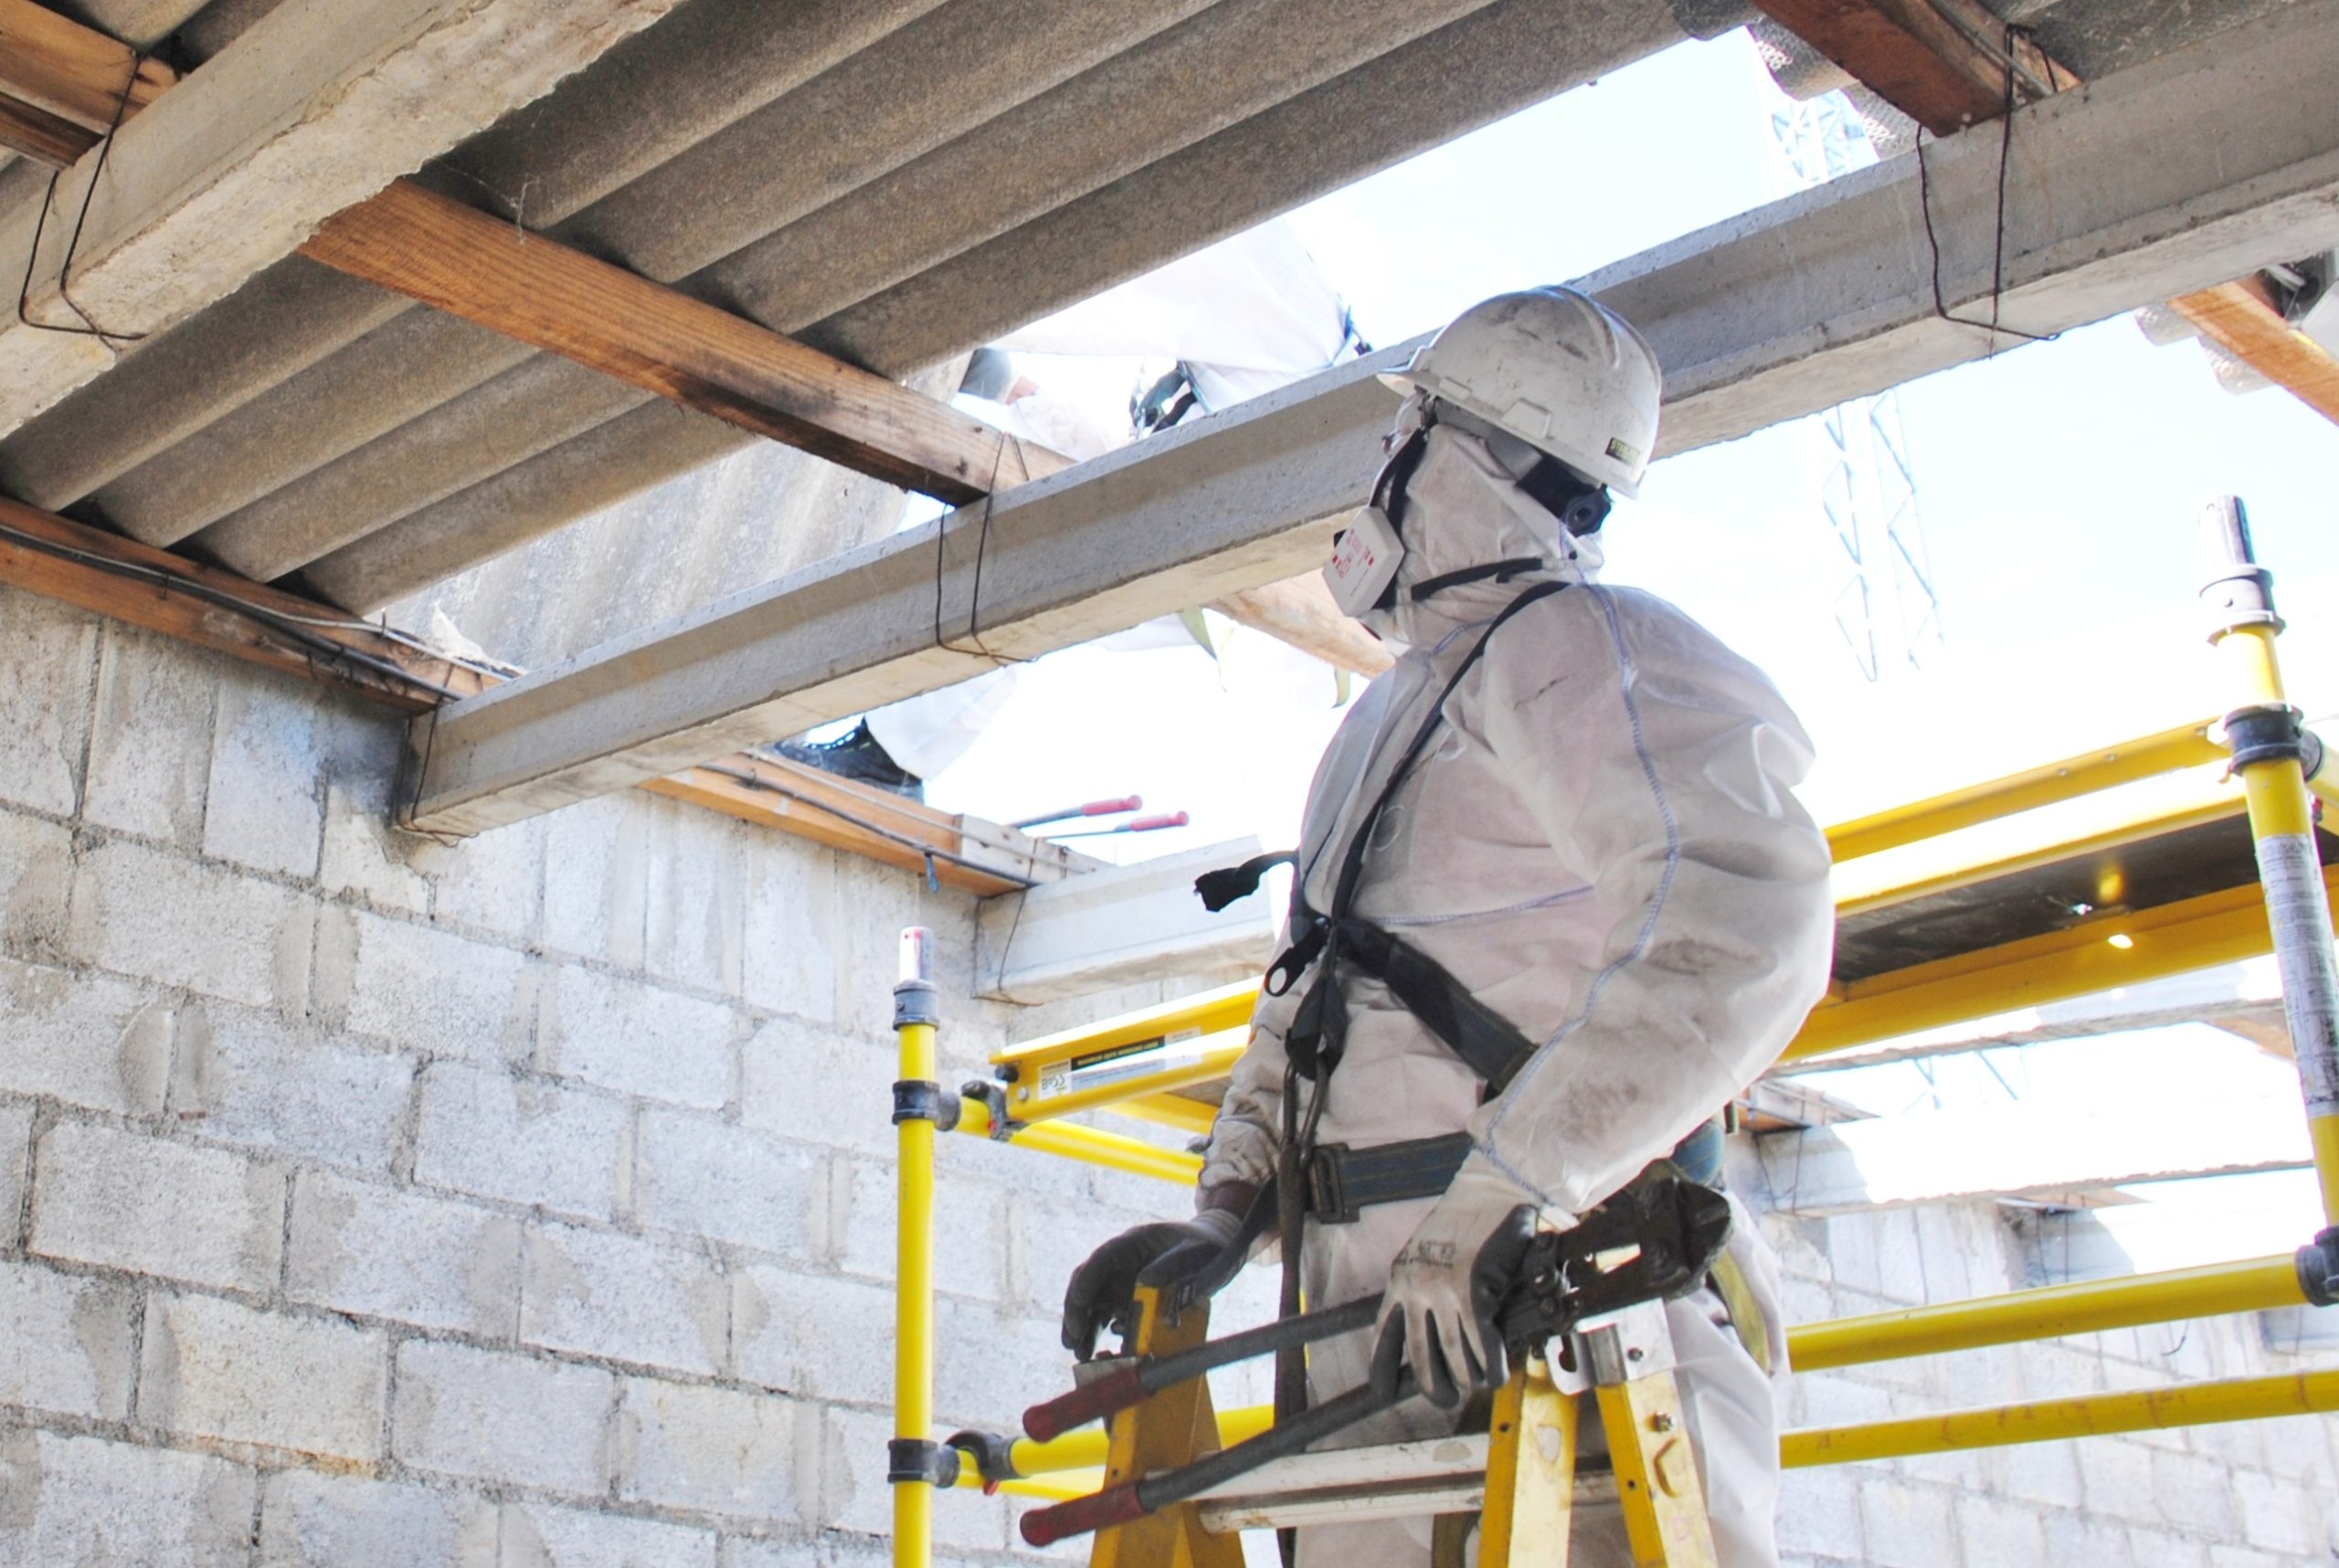 asbestos abatement in progress - Ontario